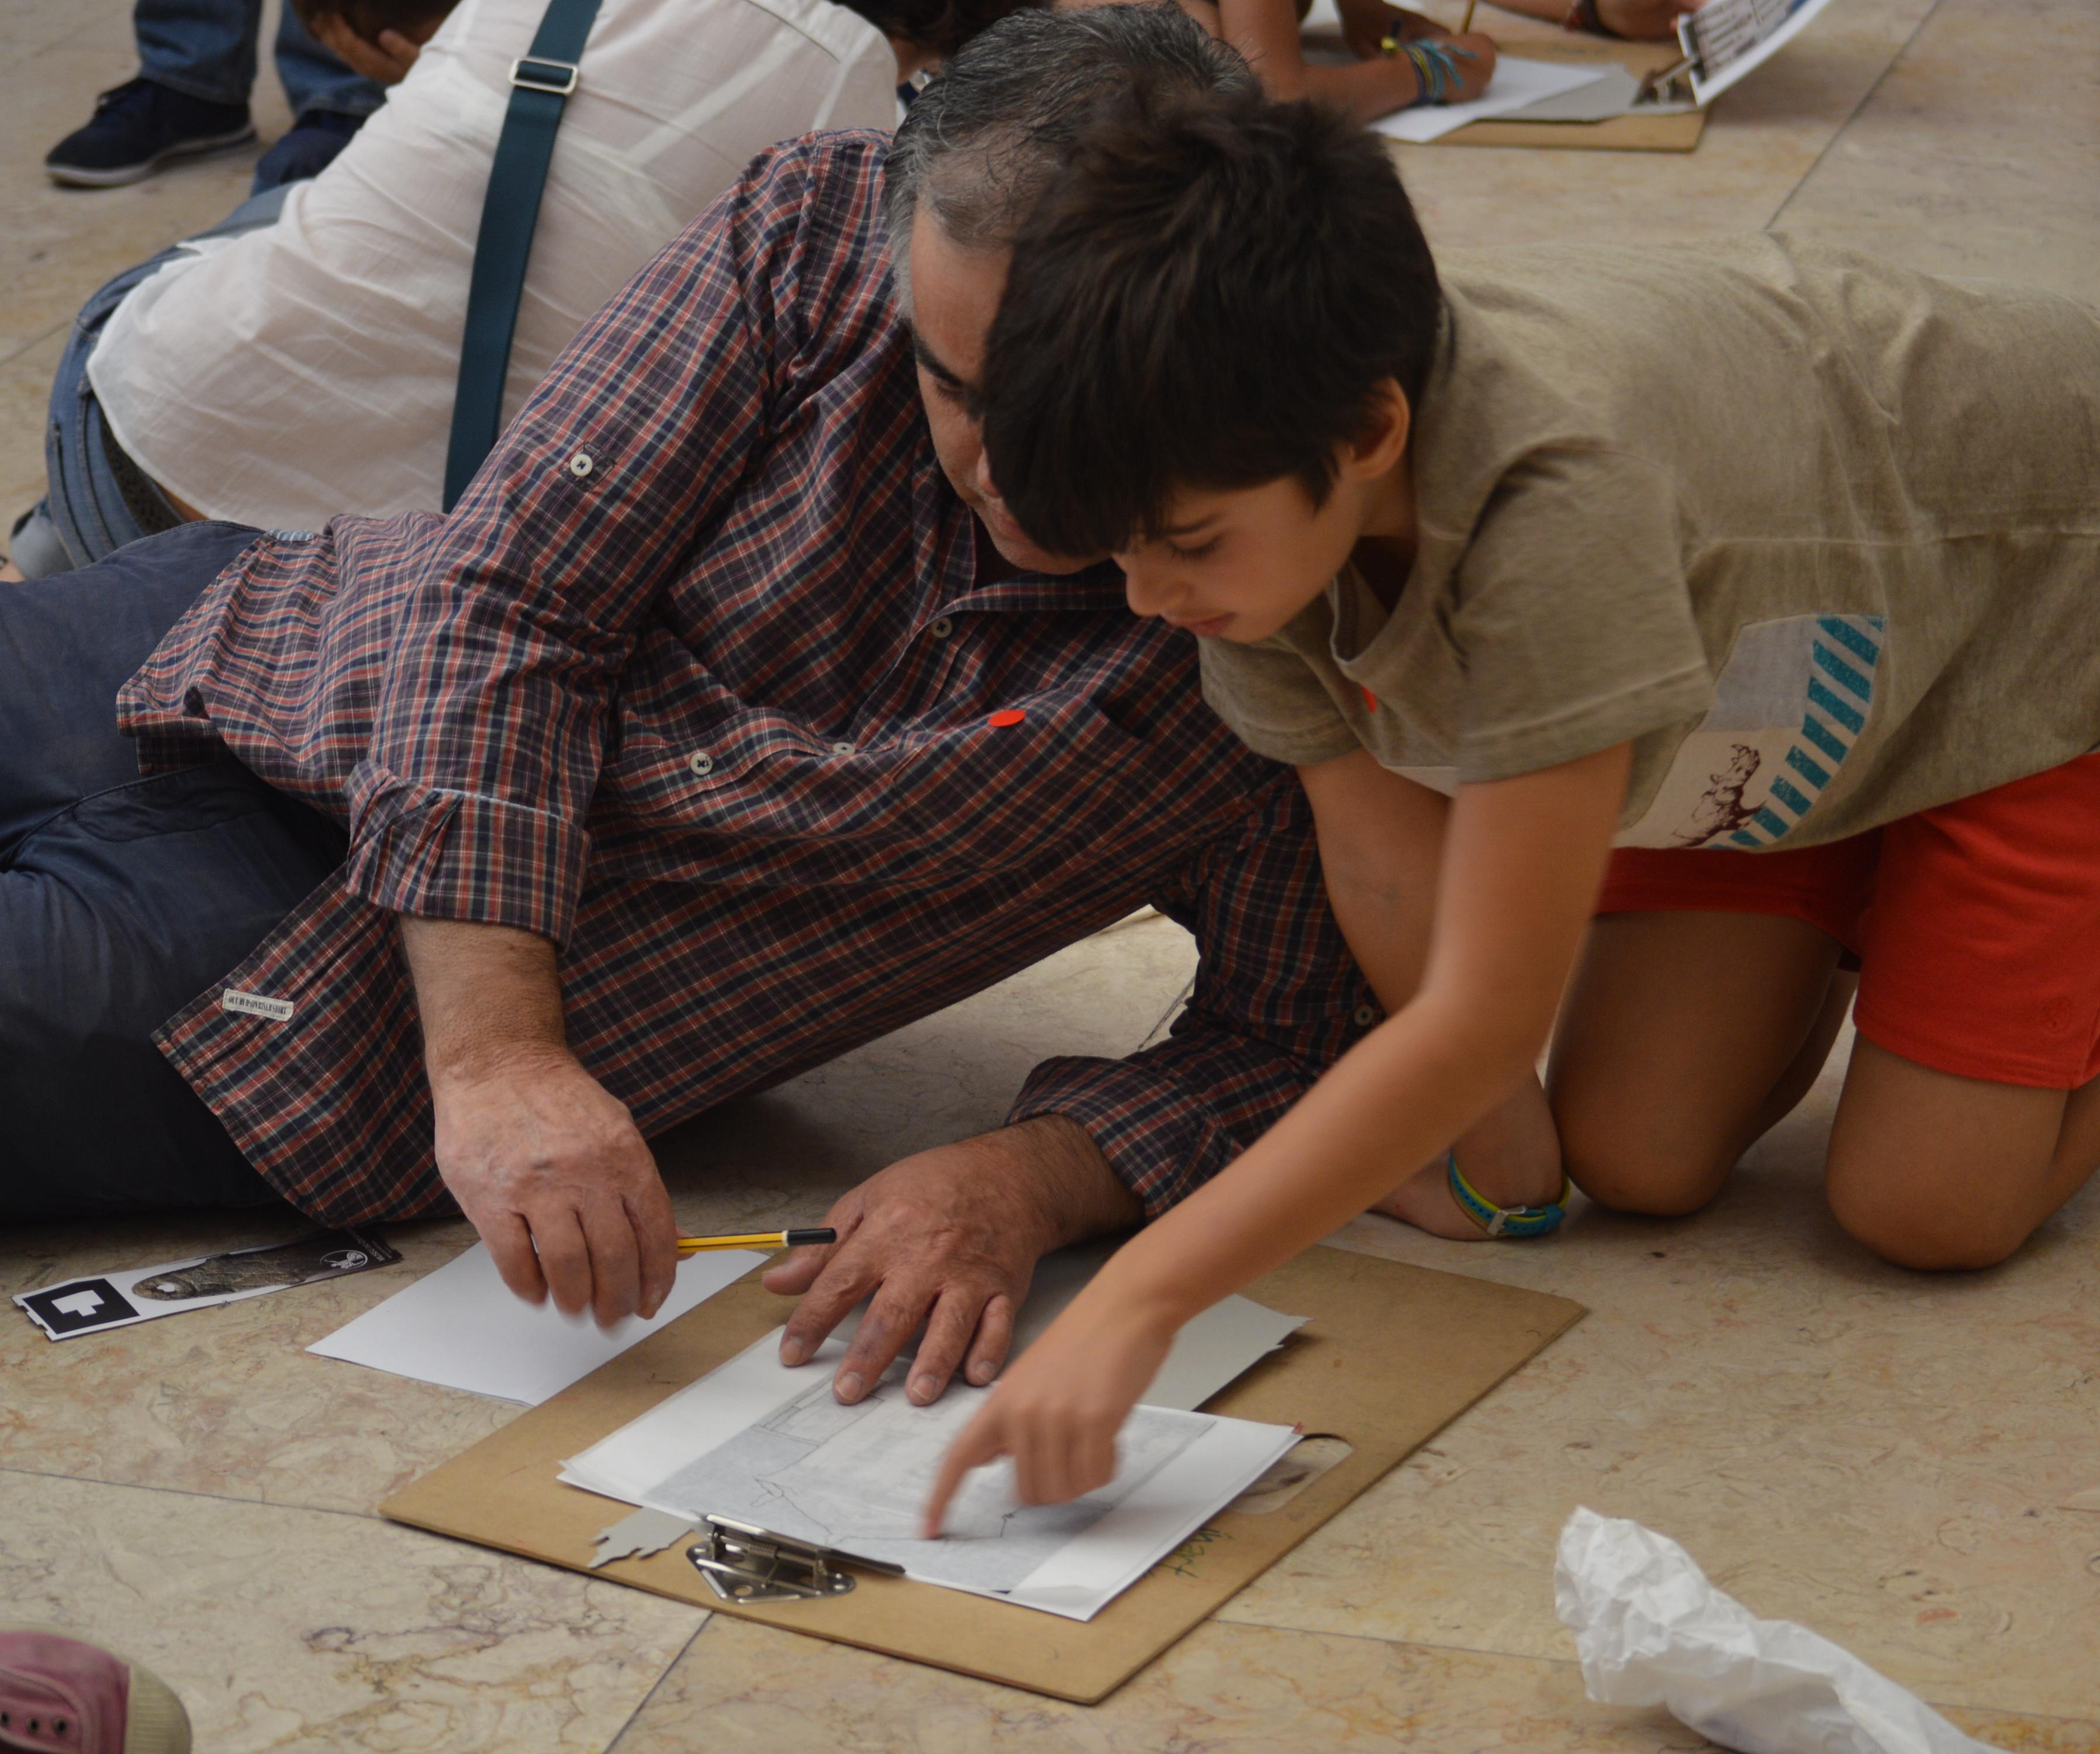 Adulto e criança participam na atividade "Arquitetar ideias" e fazem desenhos sob uma prancheta